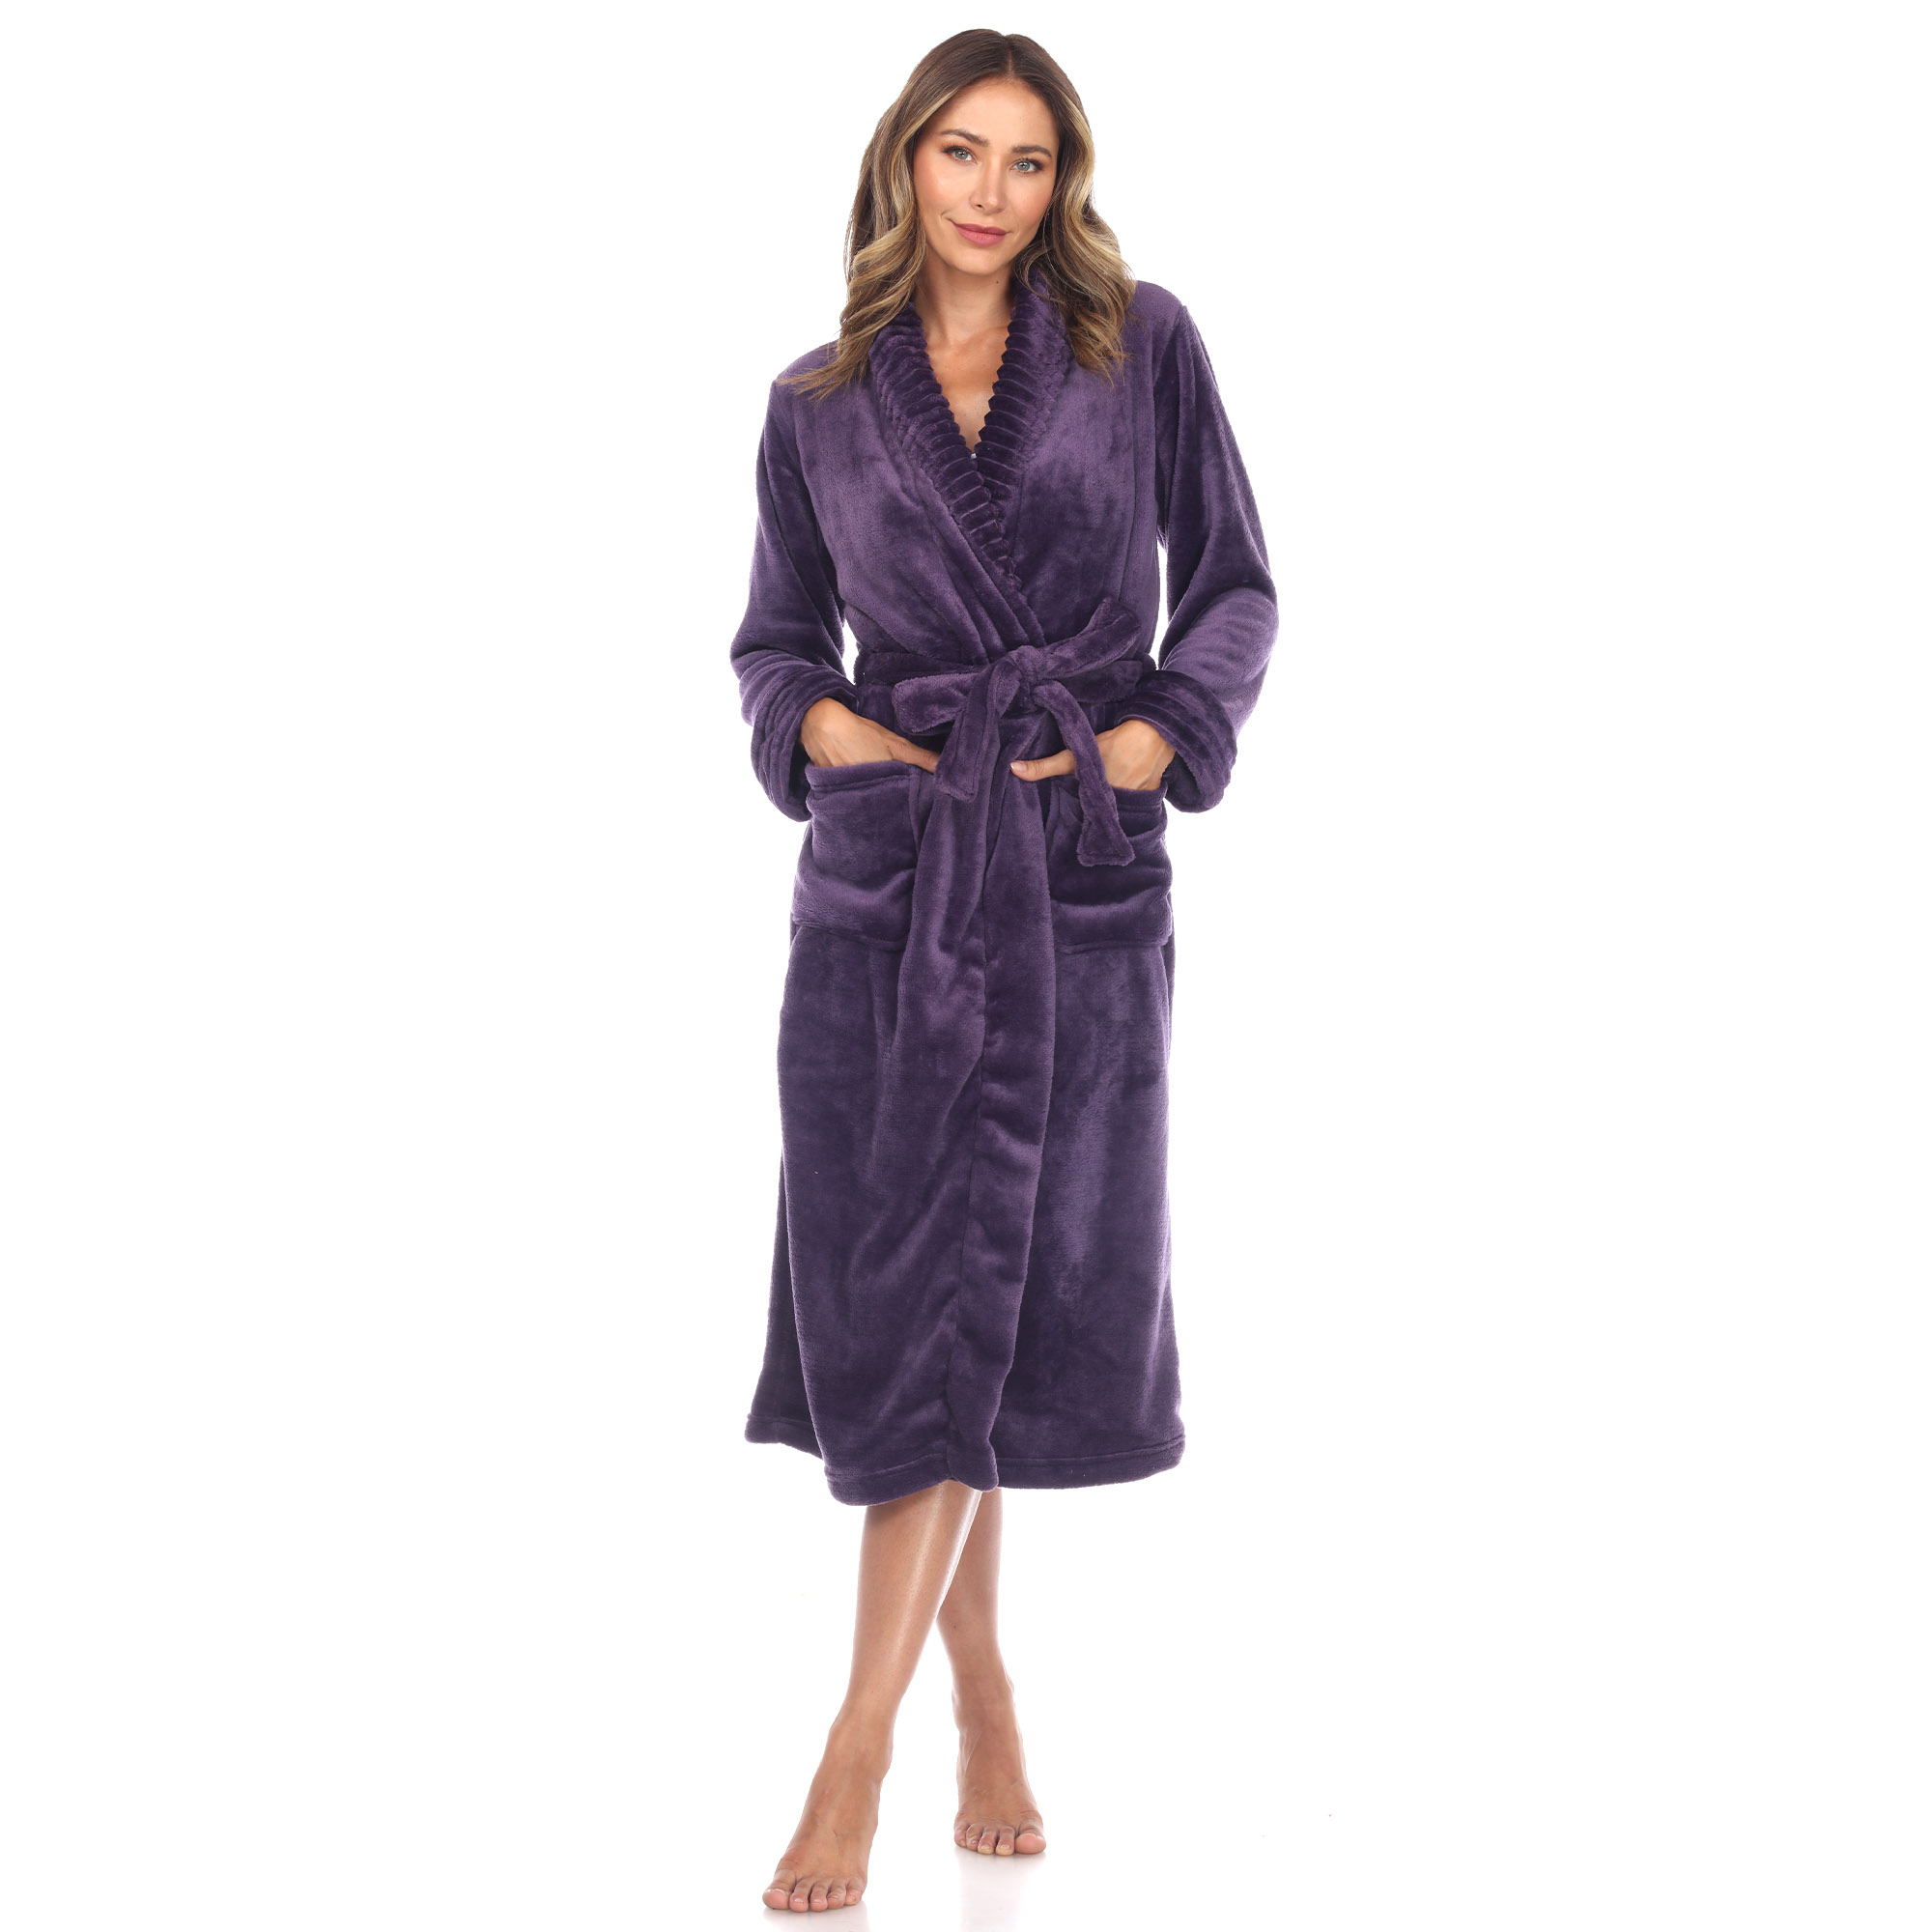 White Mark Women's Cozy Lounge Robe - Purple, L/XL